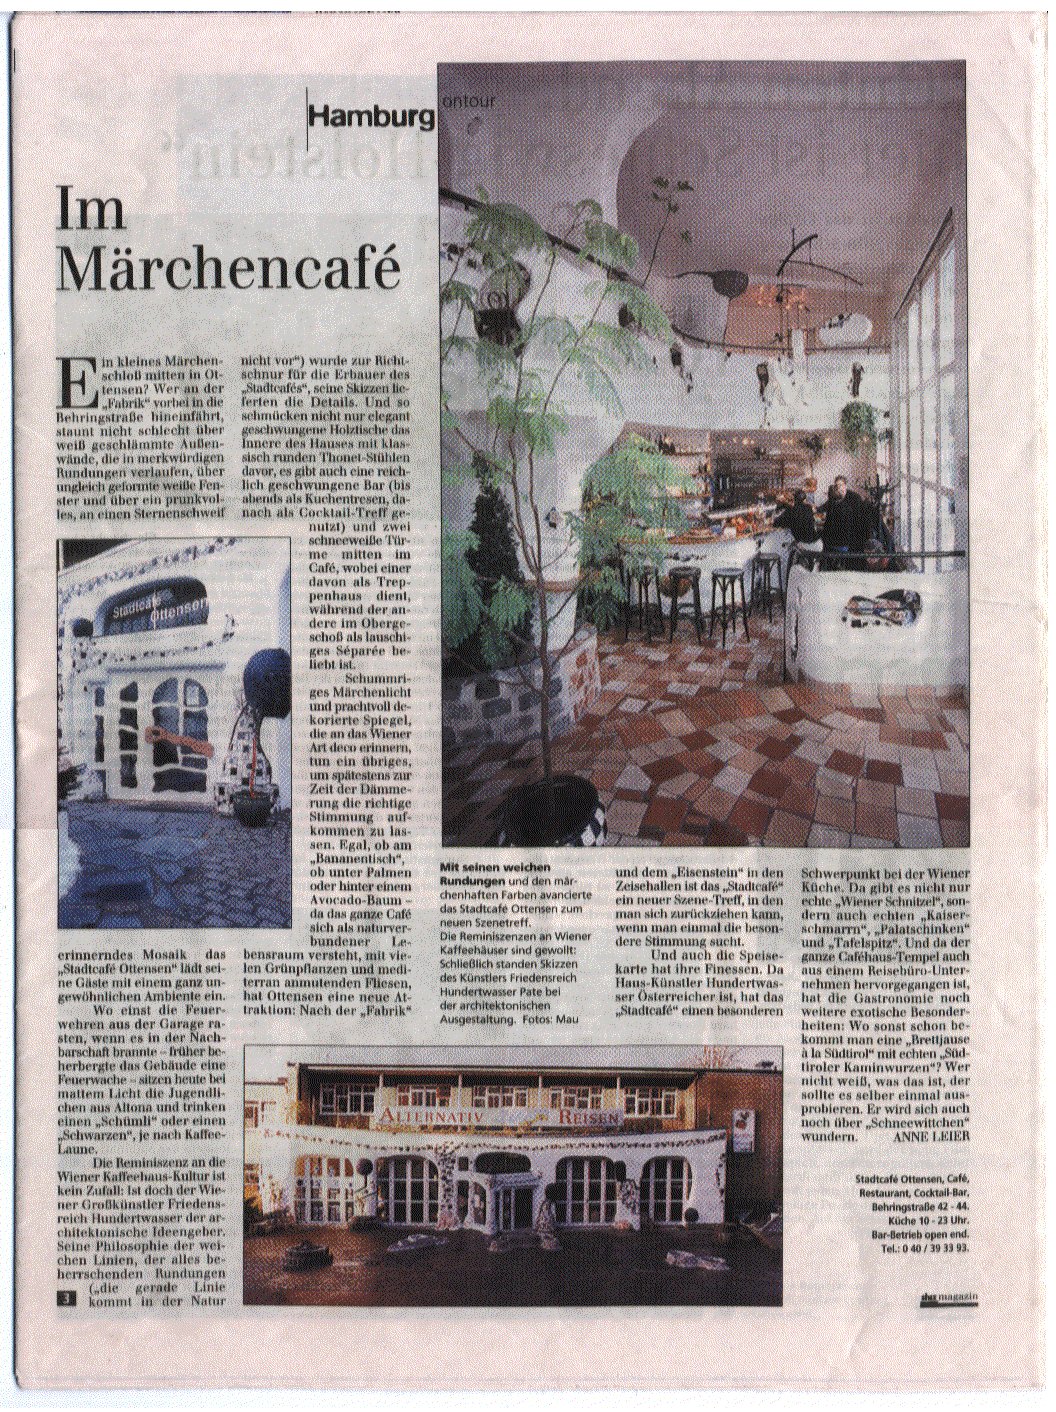 Flensburger Tageblatt Nr. 4 vom 26.1.1999, Schleswig-Holsteiner Zeitungsverlag sh:z magazin Seite 3: